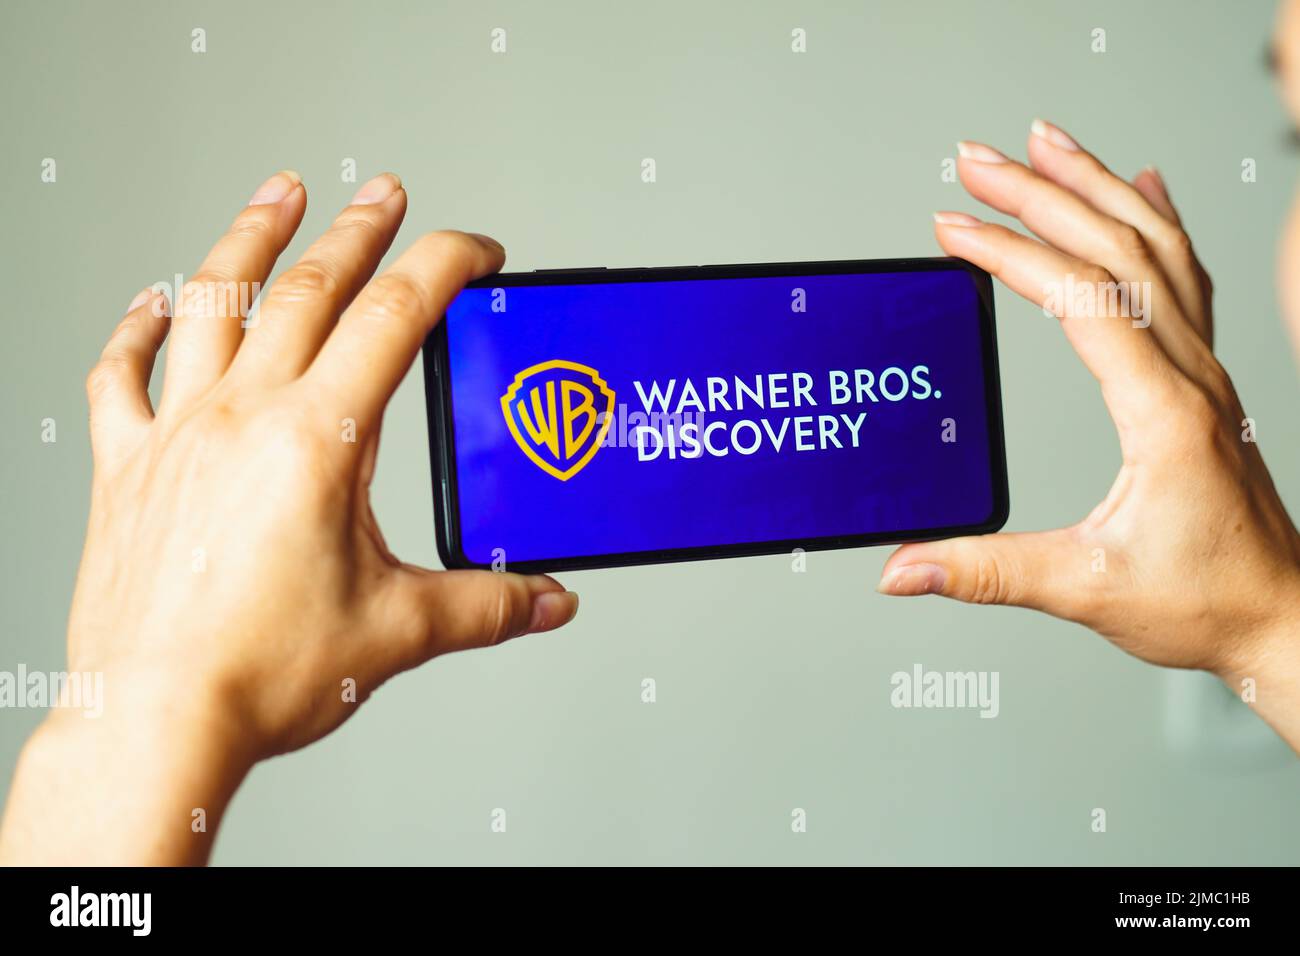 In dieser Abbildung wird das Warner Bros. Discovery-Logo auf einem Smartphone-Bildschirm angezeigt. Stockfoto